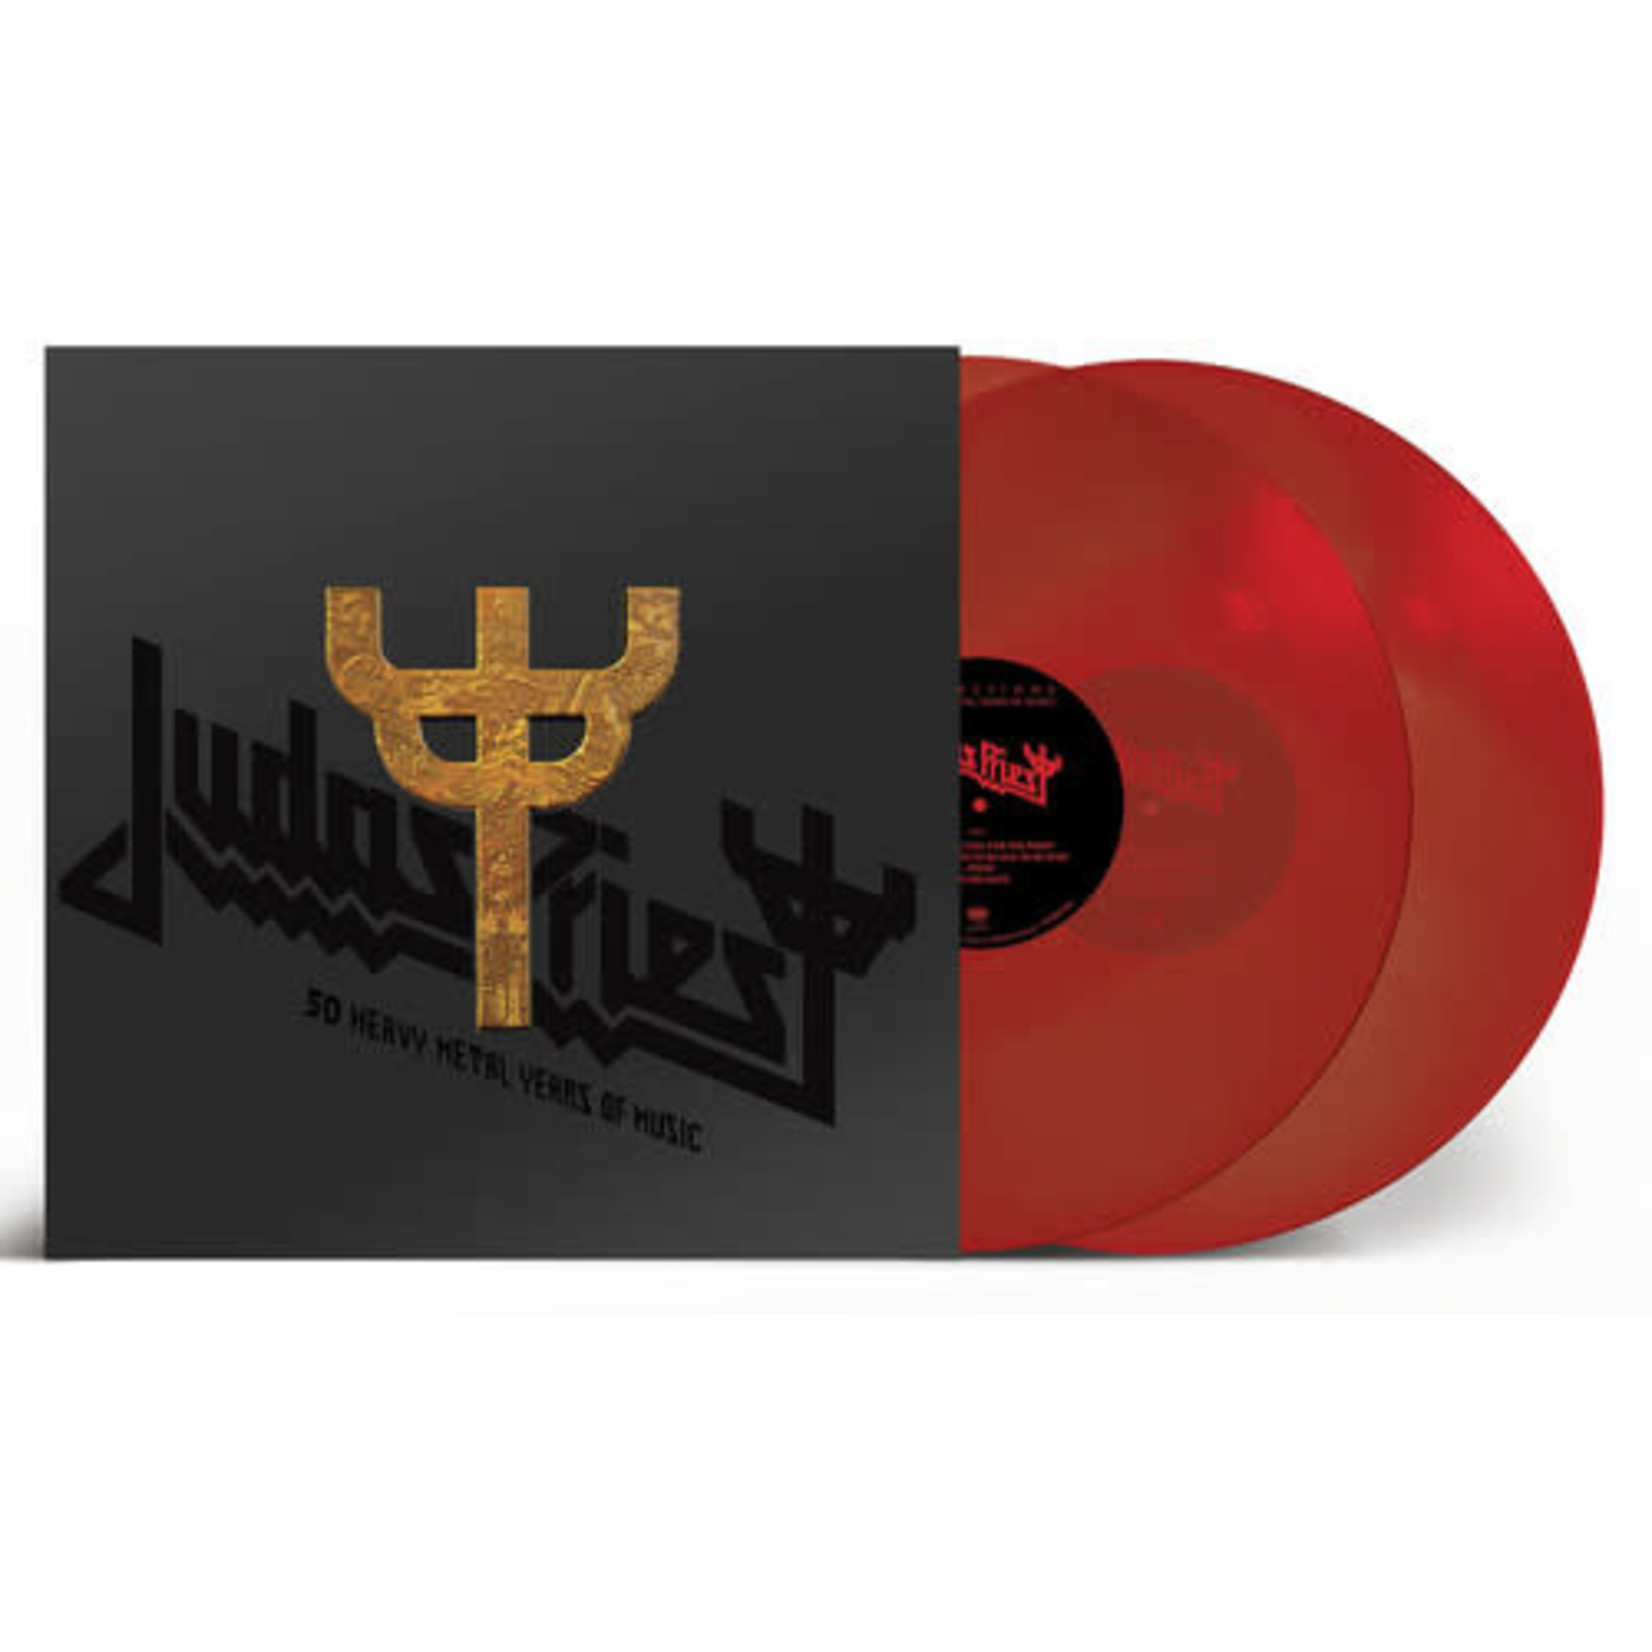 Judas Priest - Reflections: 50 Heavy Metal Years Of Music (Red Vinyl) [2LP]